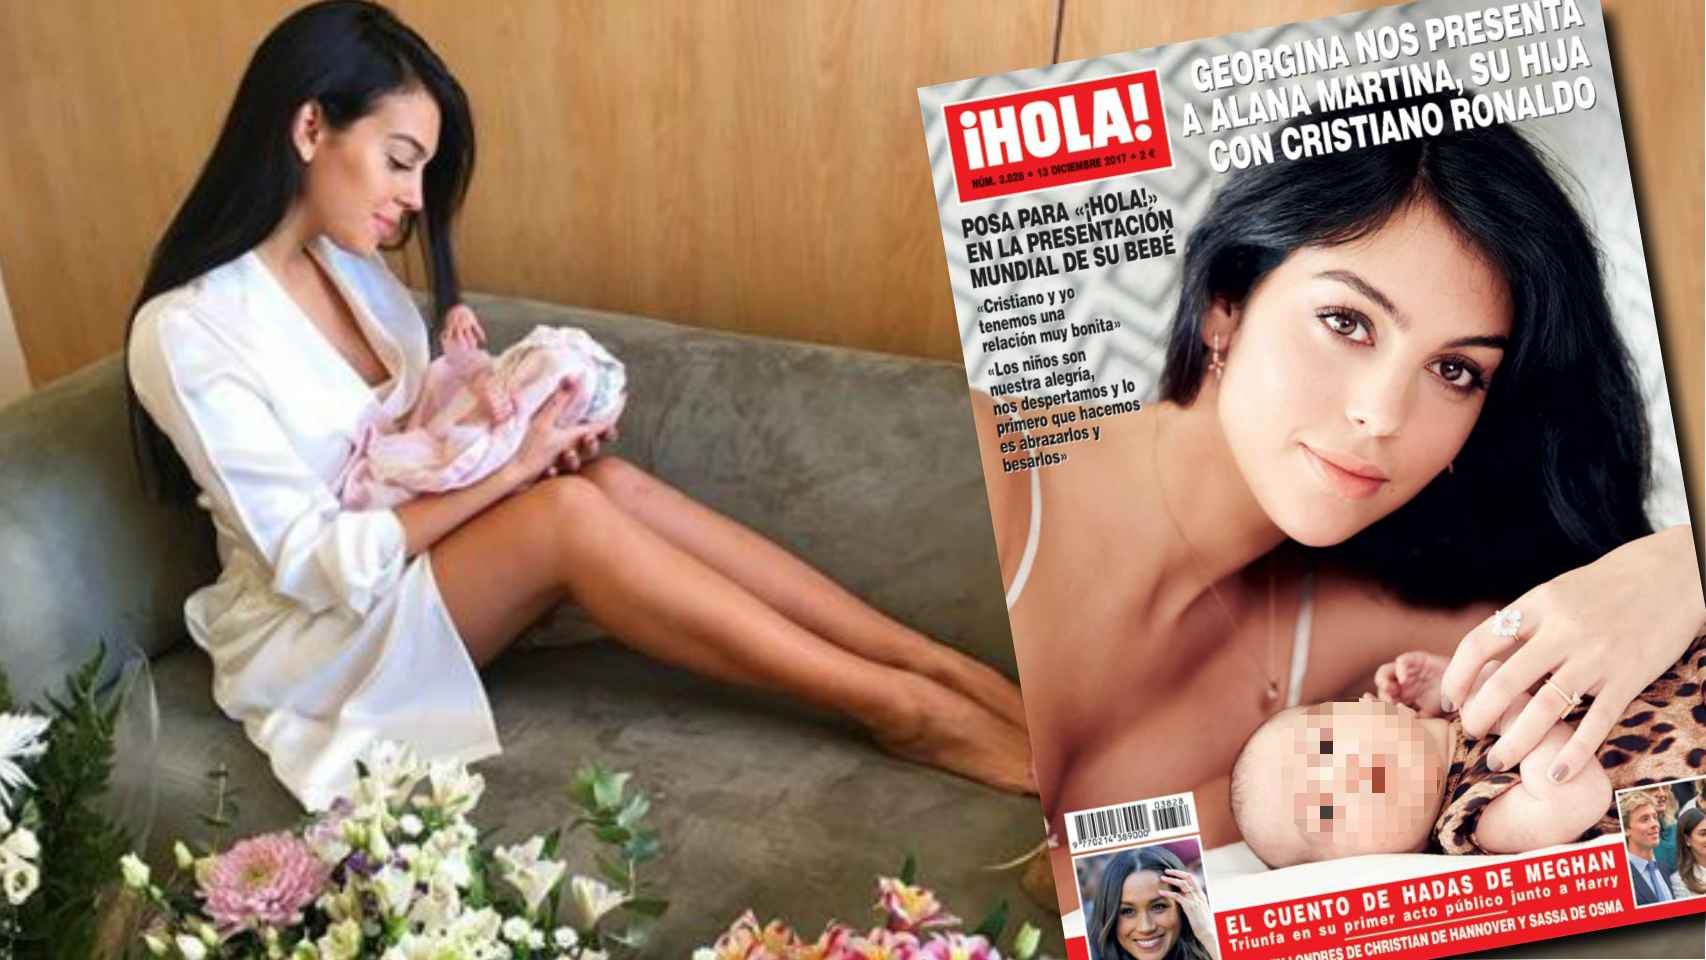 Georgina Rodríguez presenta a su hija en la revista HOLA!